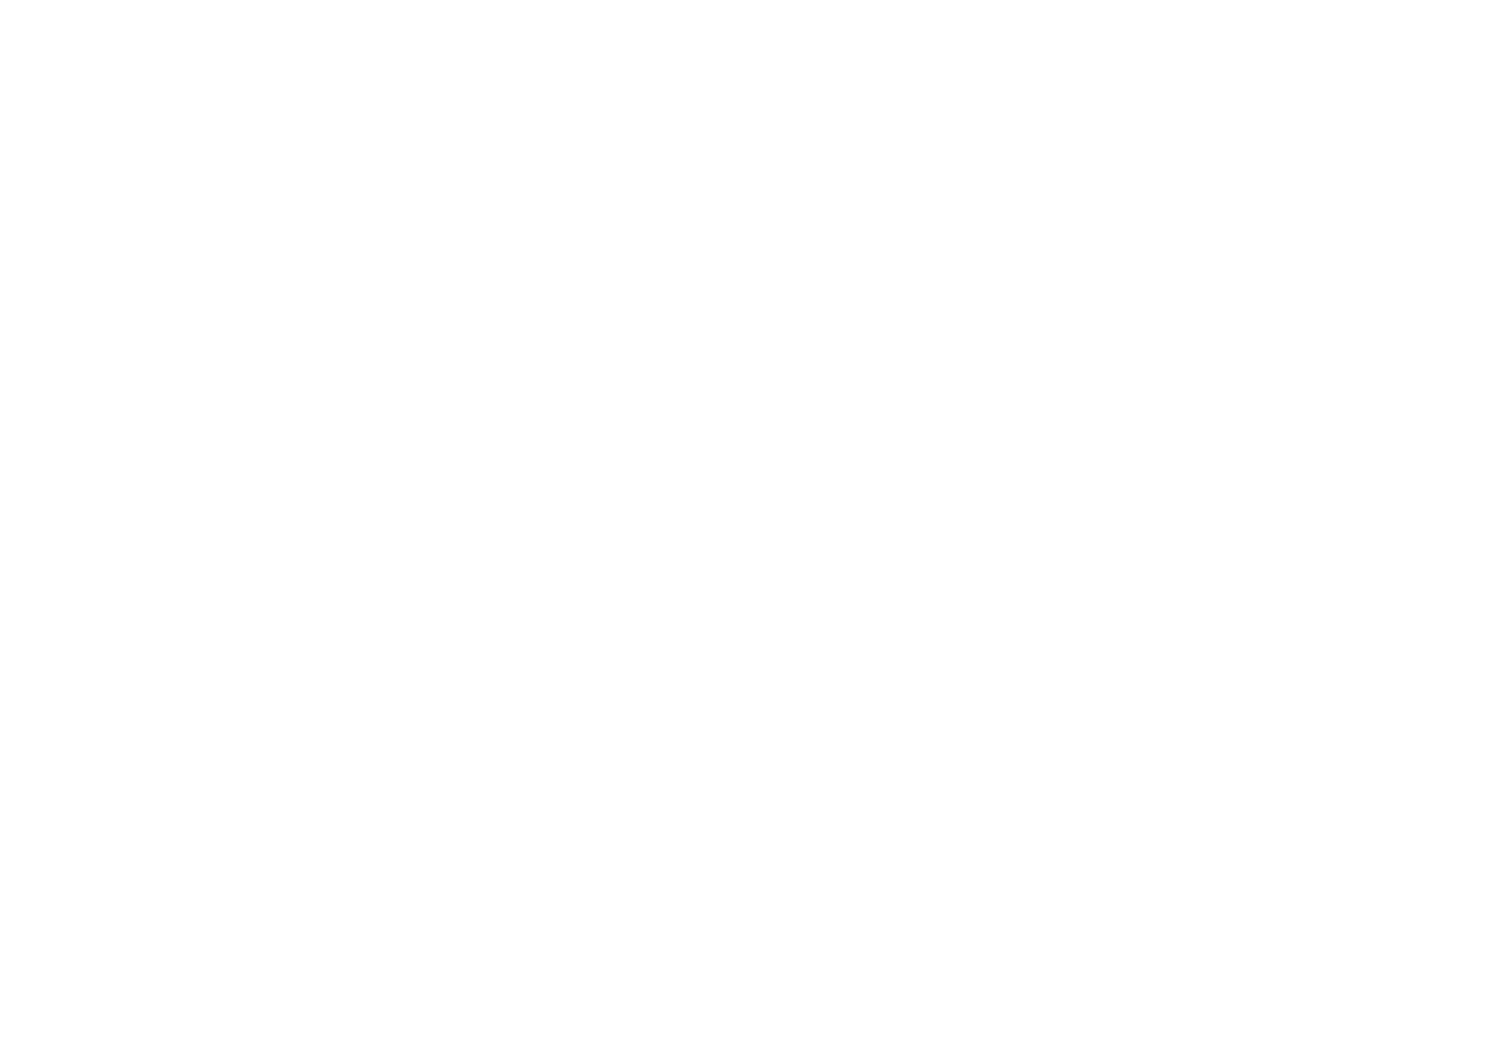 Holy Smokes Records